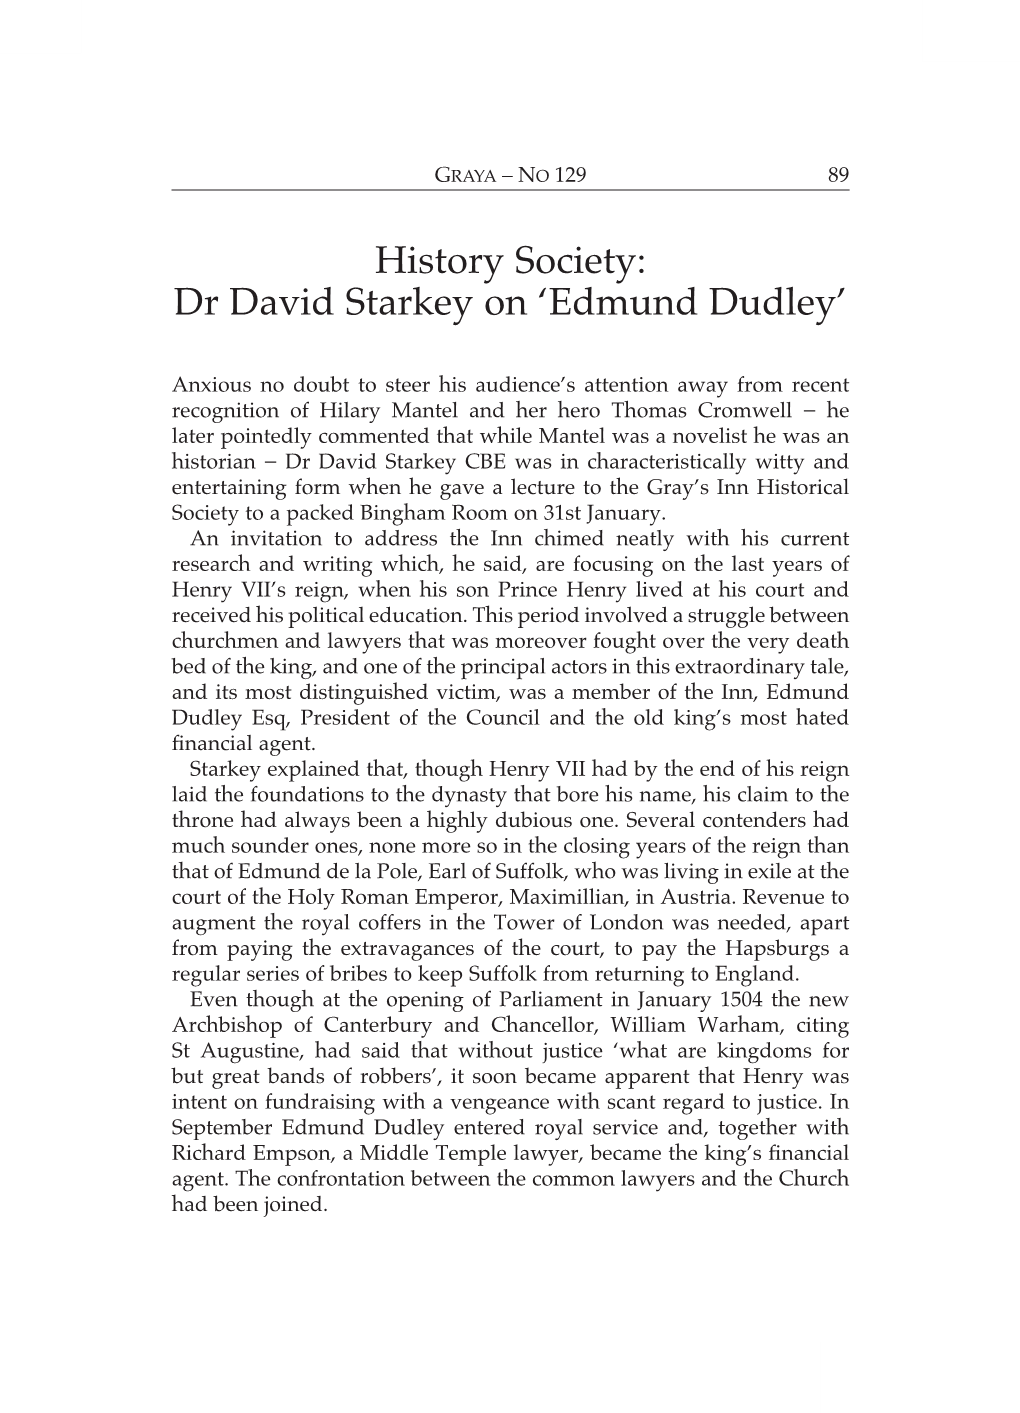 History Society: Dr David Starkey on 'Edmund Dudley'